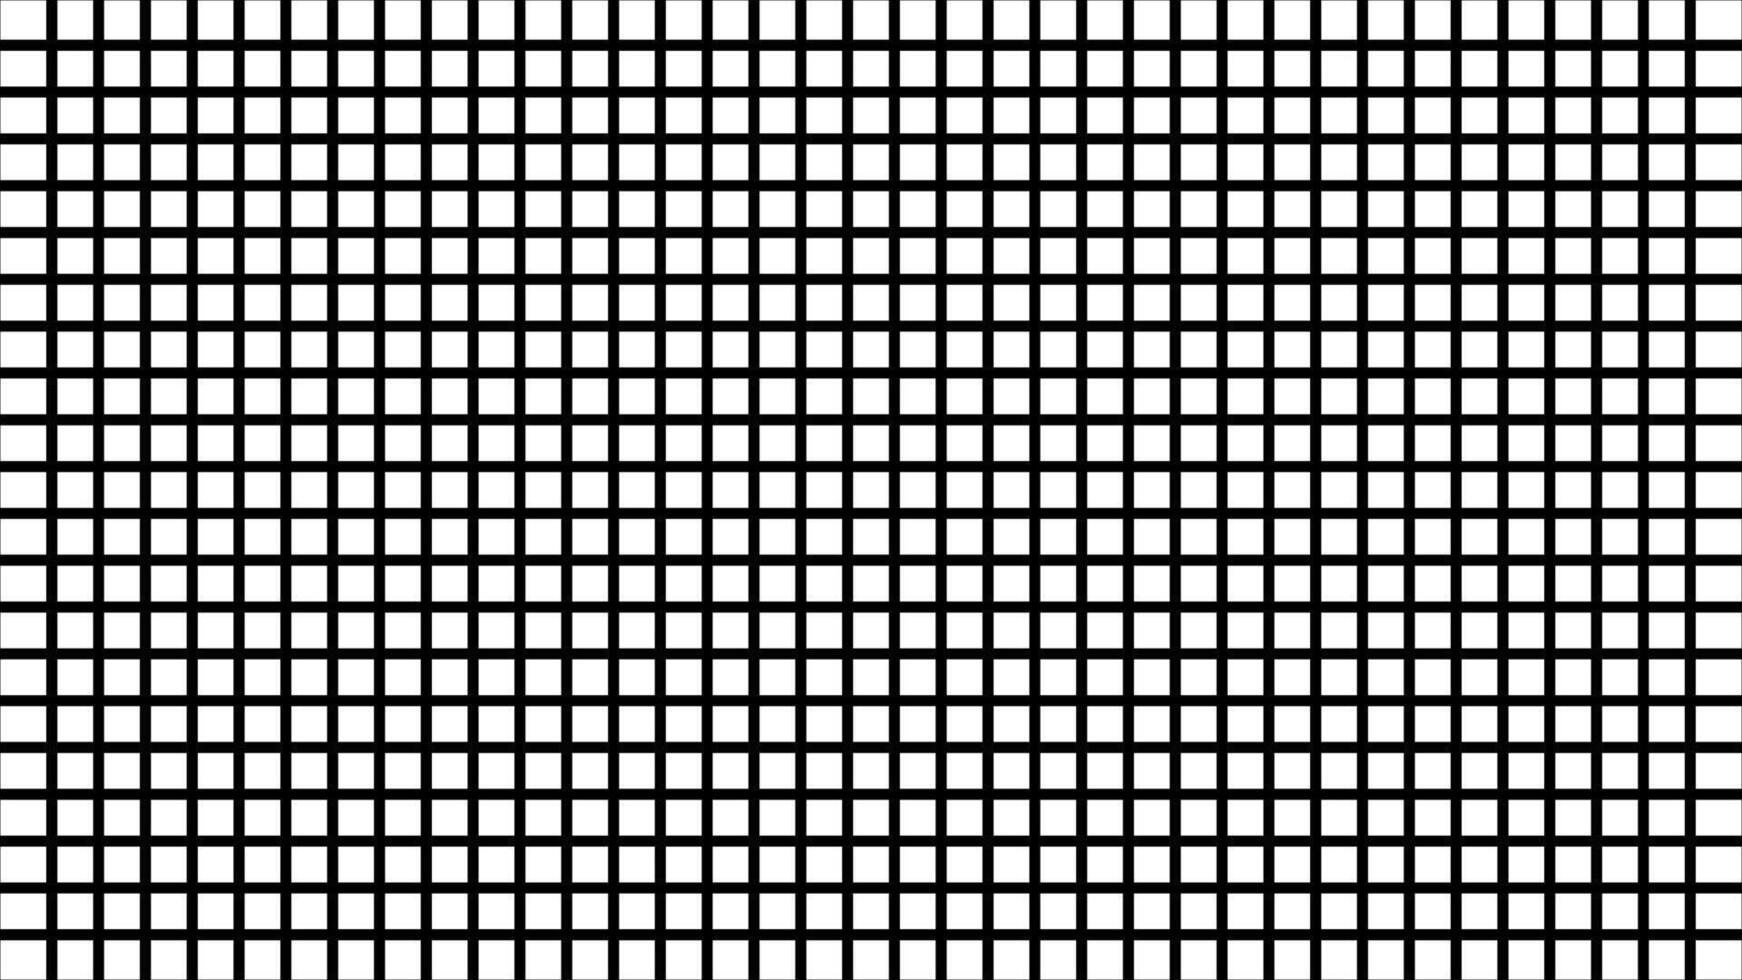 schwarz und Weiß Gitter Muster. monochromatisch Platz Netz. abstrakt Schachbrett Design mit gleich Quadrate. einfach Design. geometrisch Hintergrund, Digital Hintergrund. optisch Illusion. Rhythmus und Balance vektor